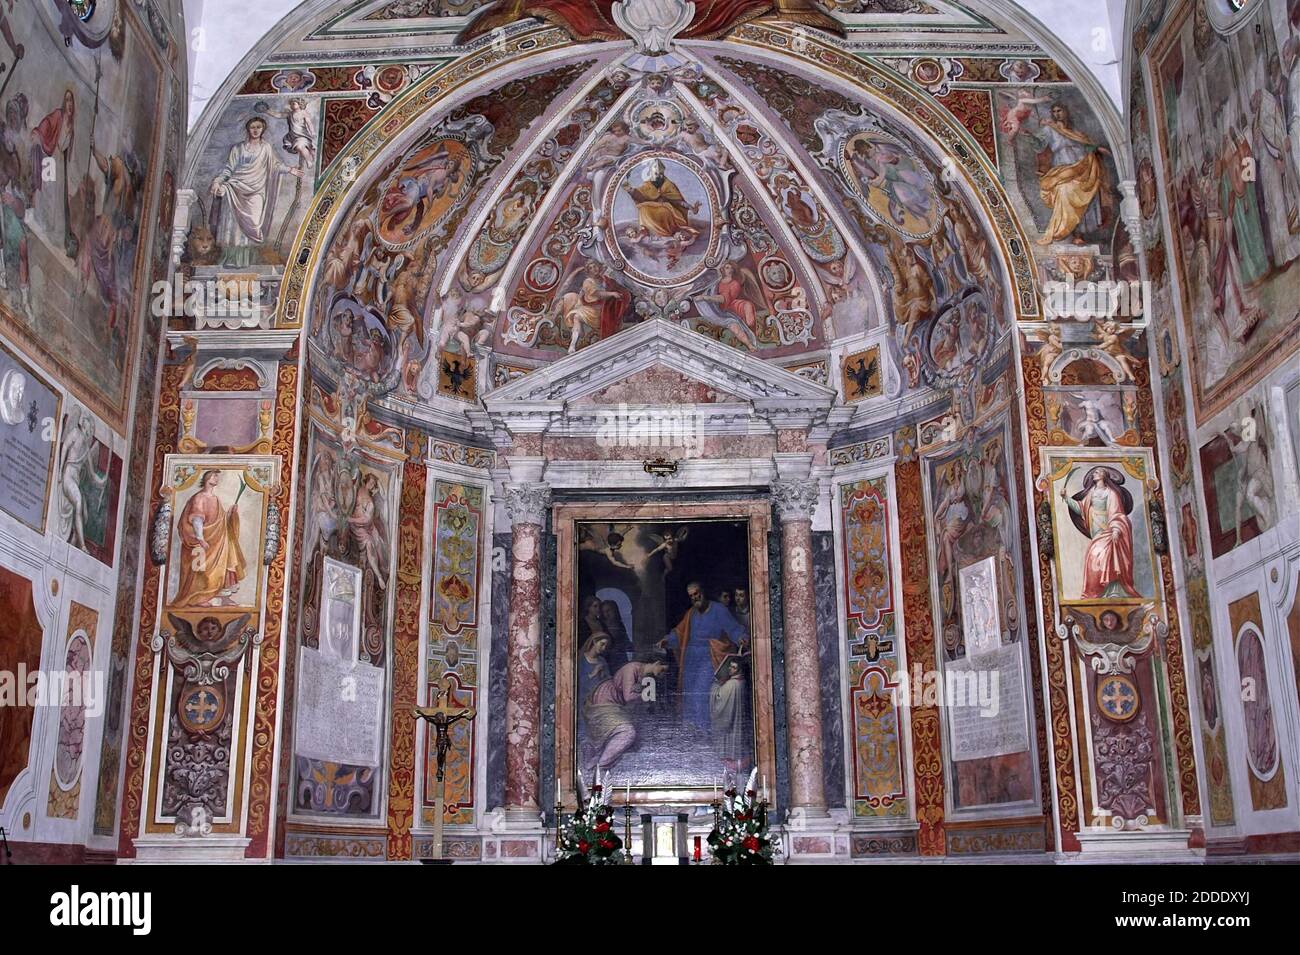 Roma, Rom, Italy, Italien; Chiesa di Santa Prisca; Church of Saint Prisca - interior; frescoes in the apse; Kirche Saint Prisca - Innenraum Stock Photo